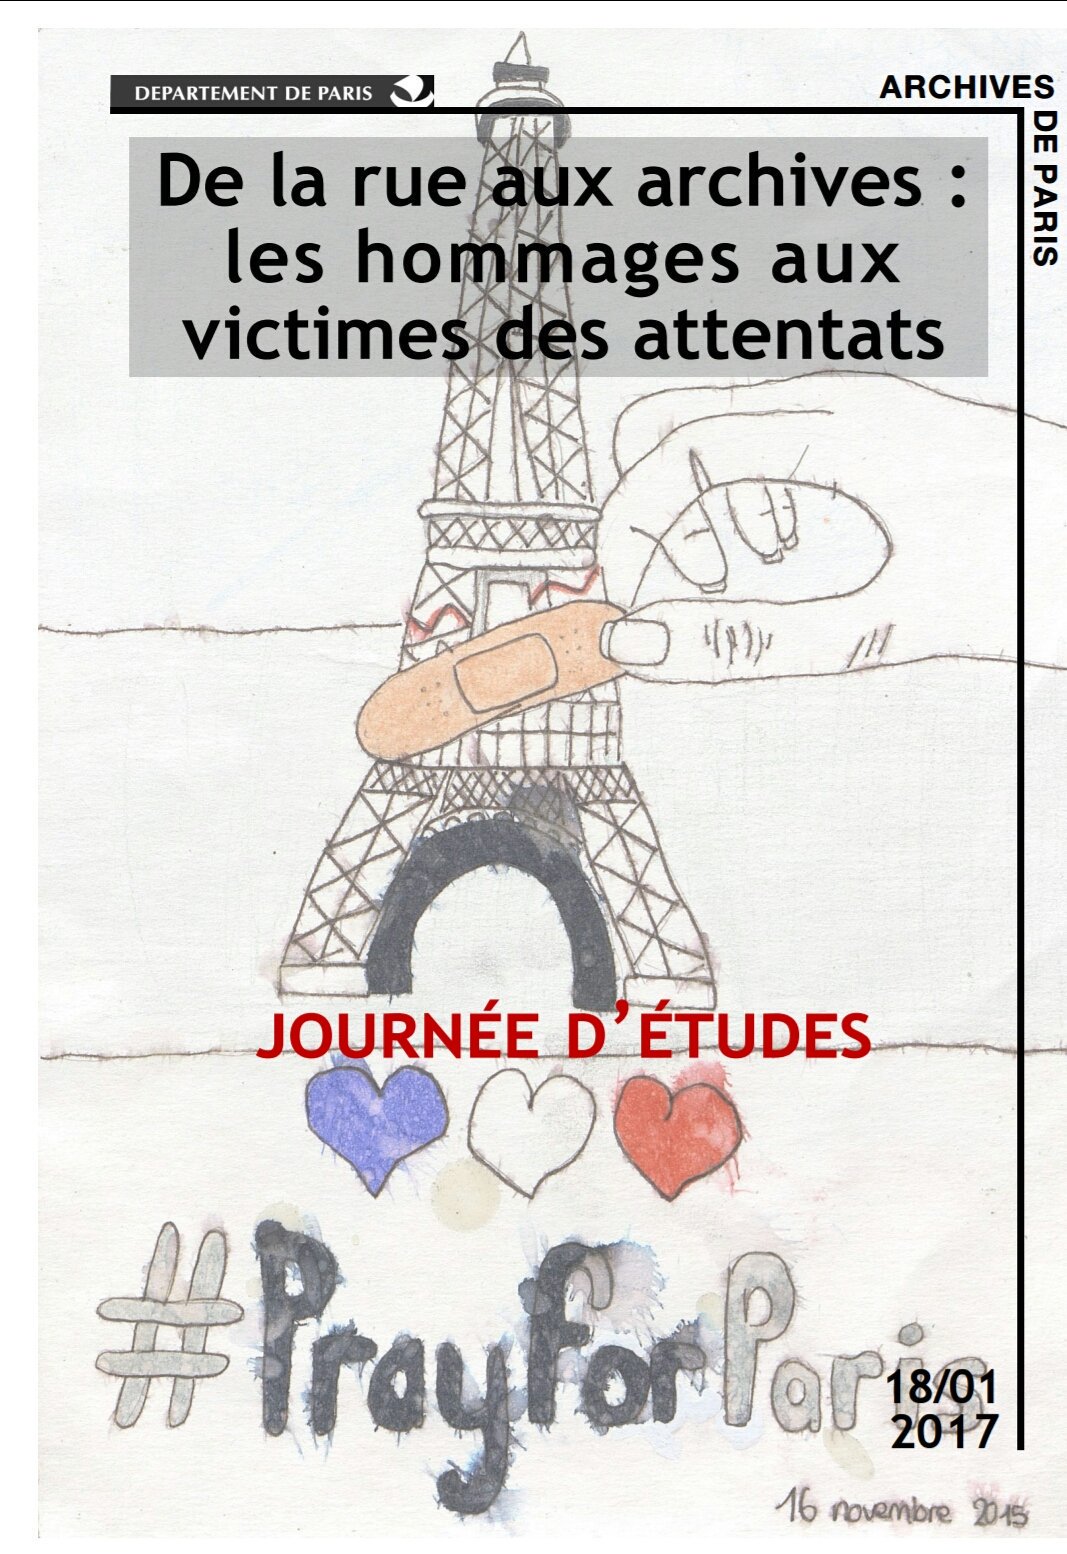 #AAFrasad17 Guillaume Nahon, Archives de Paris : hommages aux victimes des attentats du #13novembre
Revoir LT #JE_ArchivesParis du 18/01 https://t.co/bs5SEga7yg